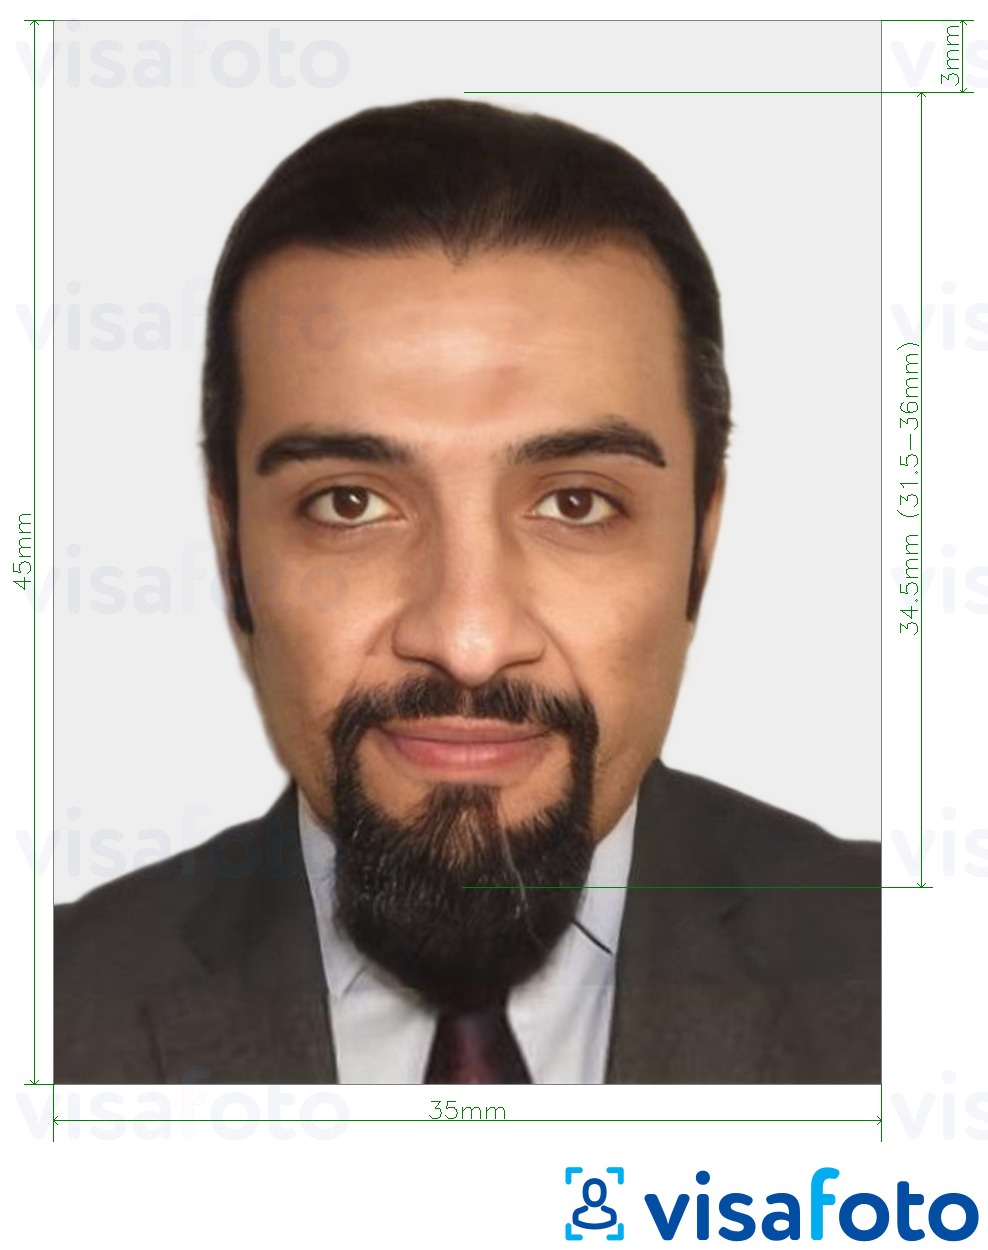 Voorbeeld van foto voor Mauritaanse identiteitskaart 35x45 mm (3,5x4,5 cm) met exacte maatspecificatie